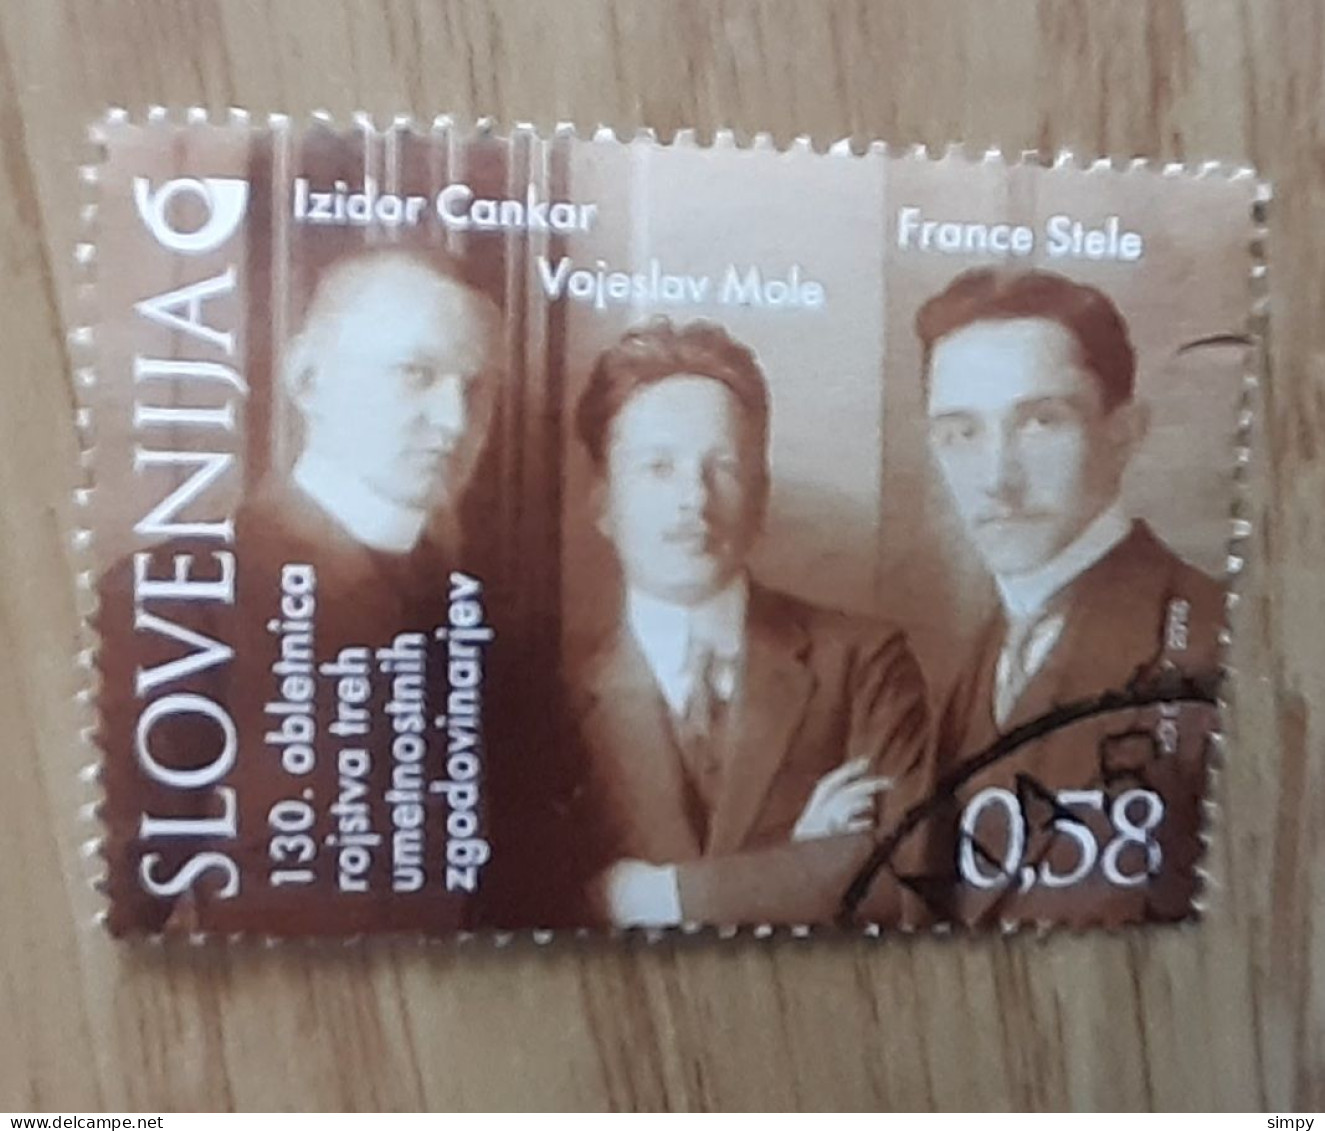 SLOVENIA 2016  Cankar Mole Stele Used Stamp - Eslovenia